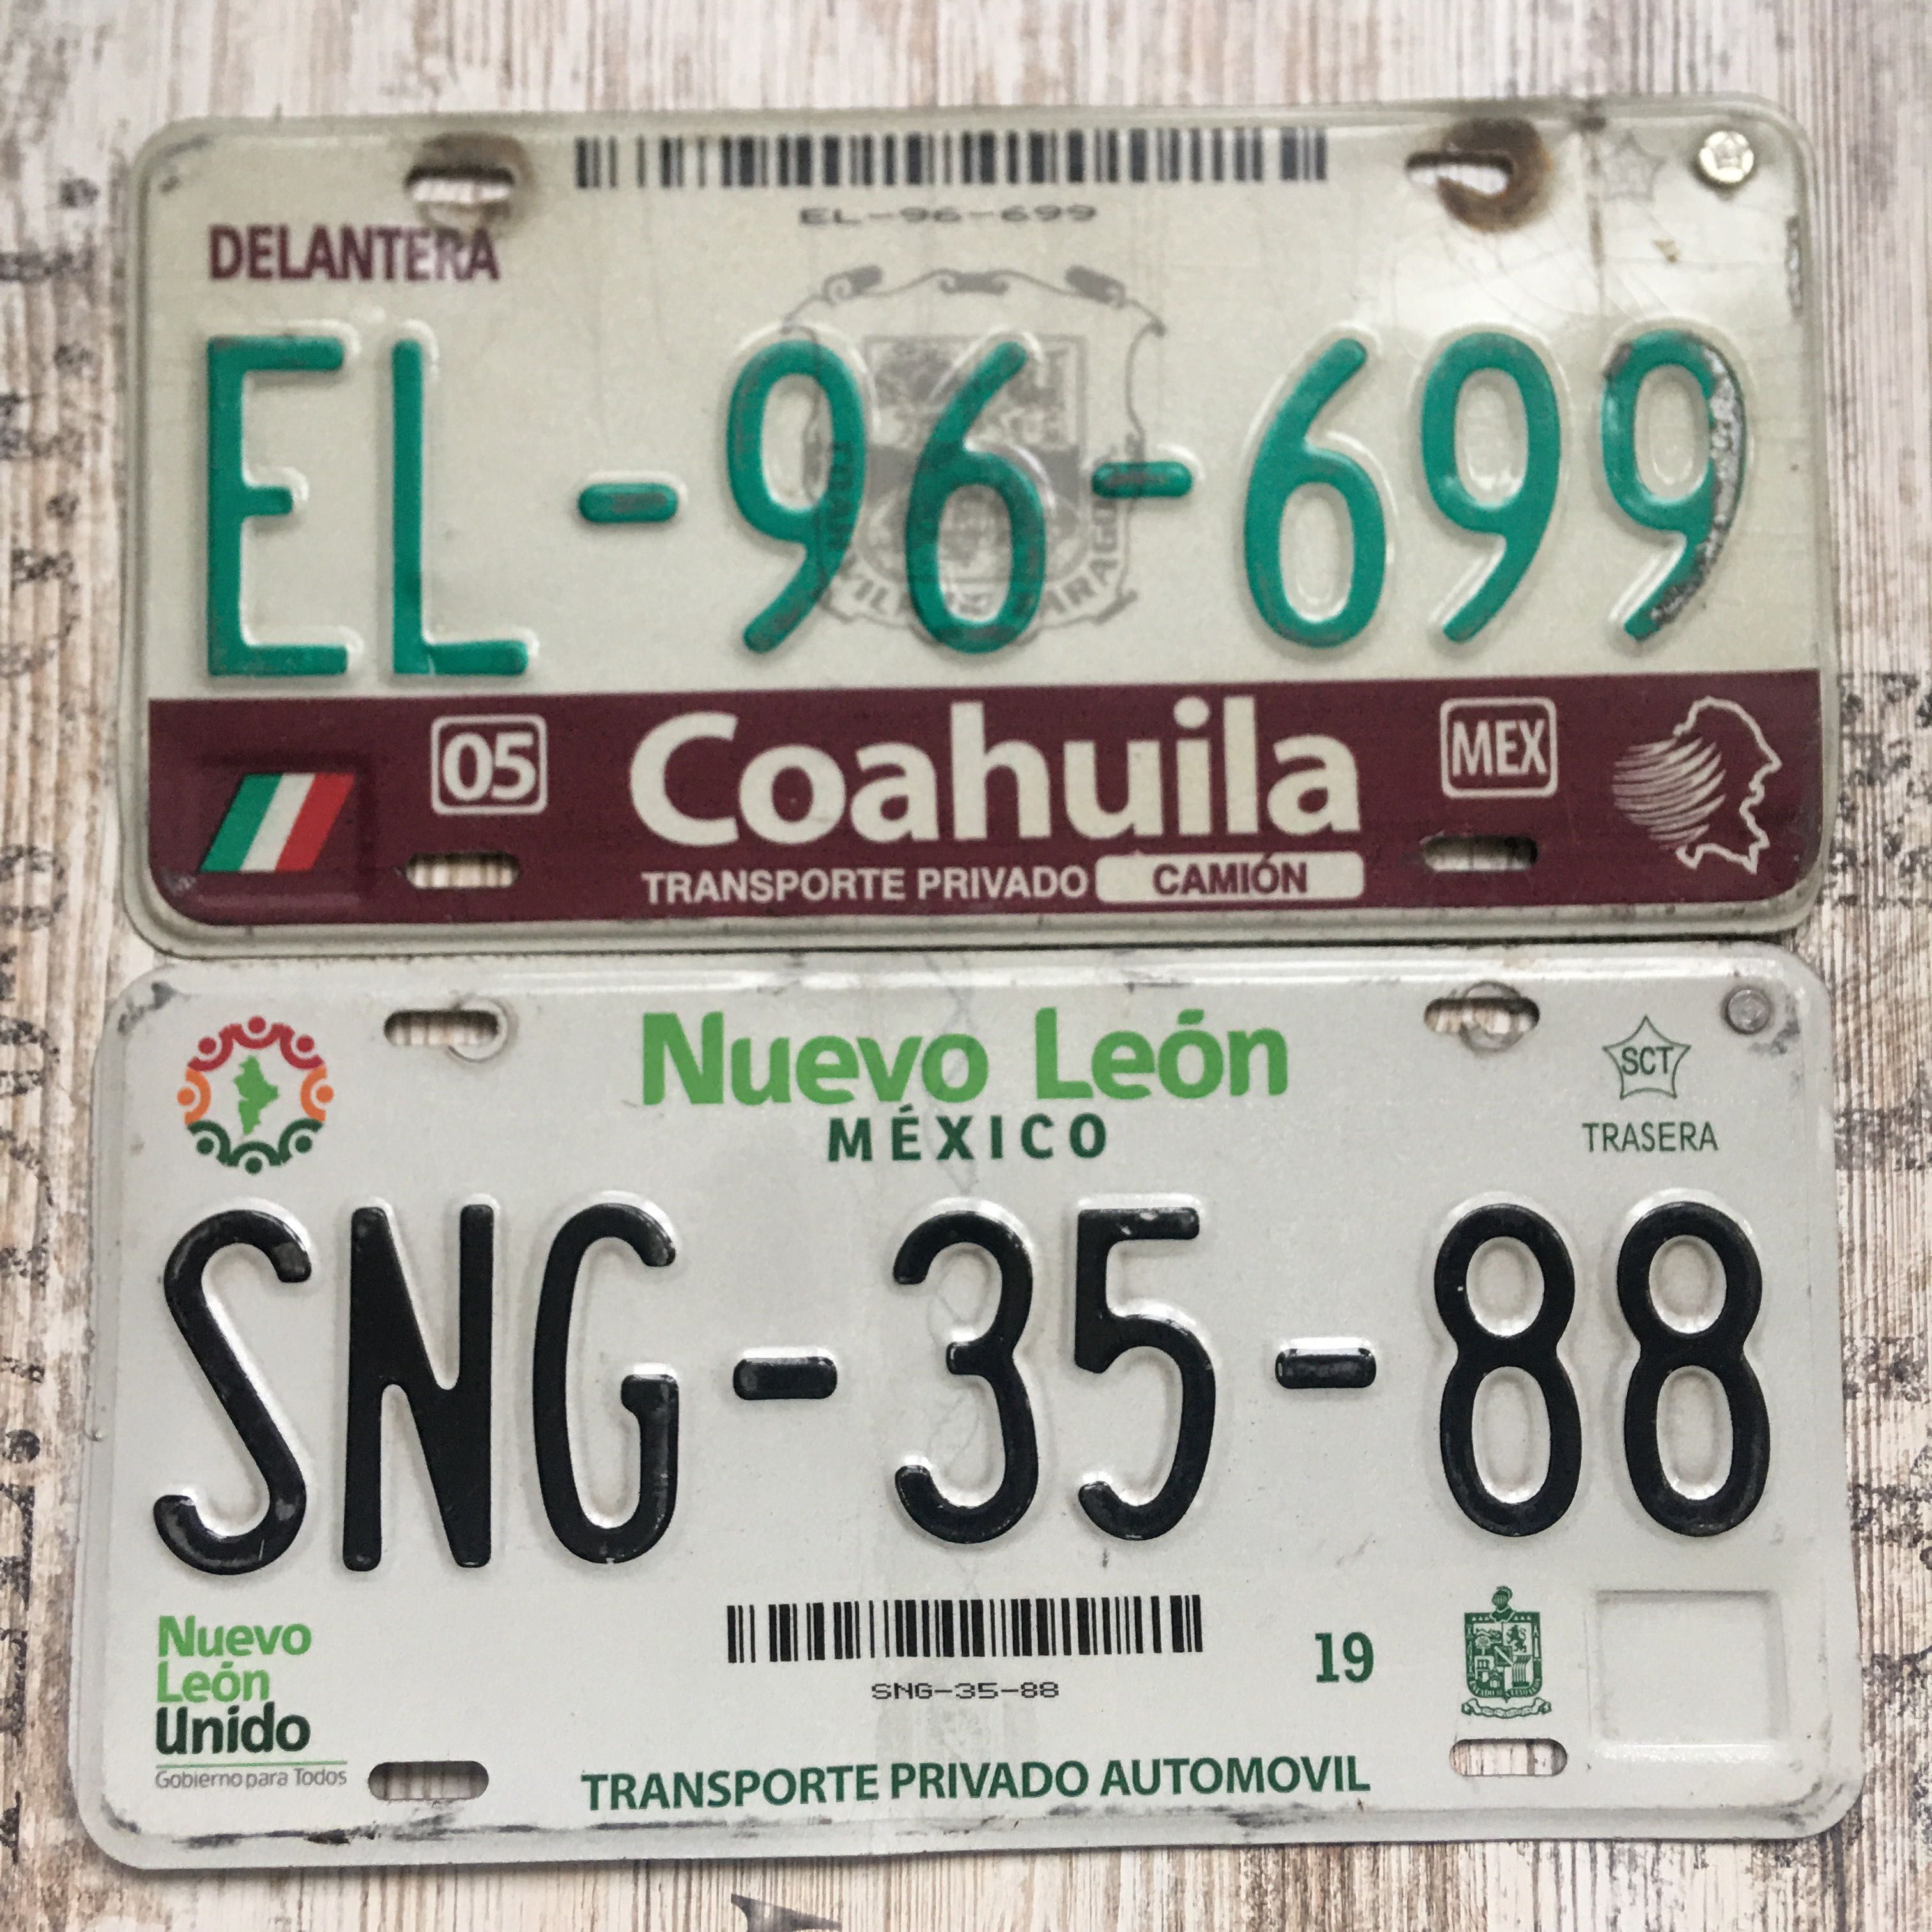 Мексиканский номерной знак мексика автомобильный номер Mexico plate